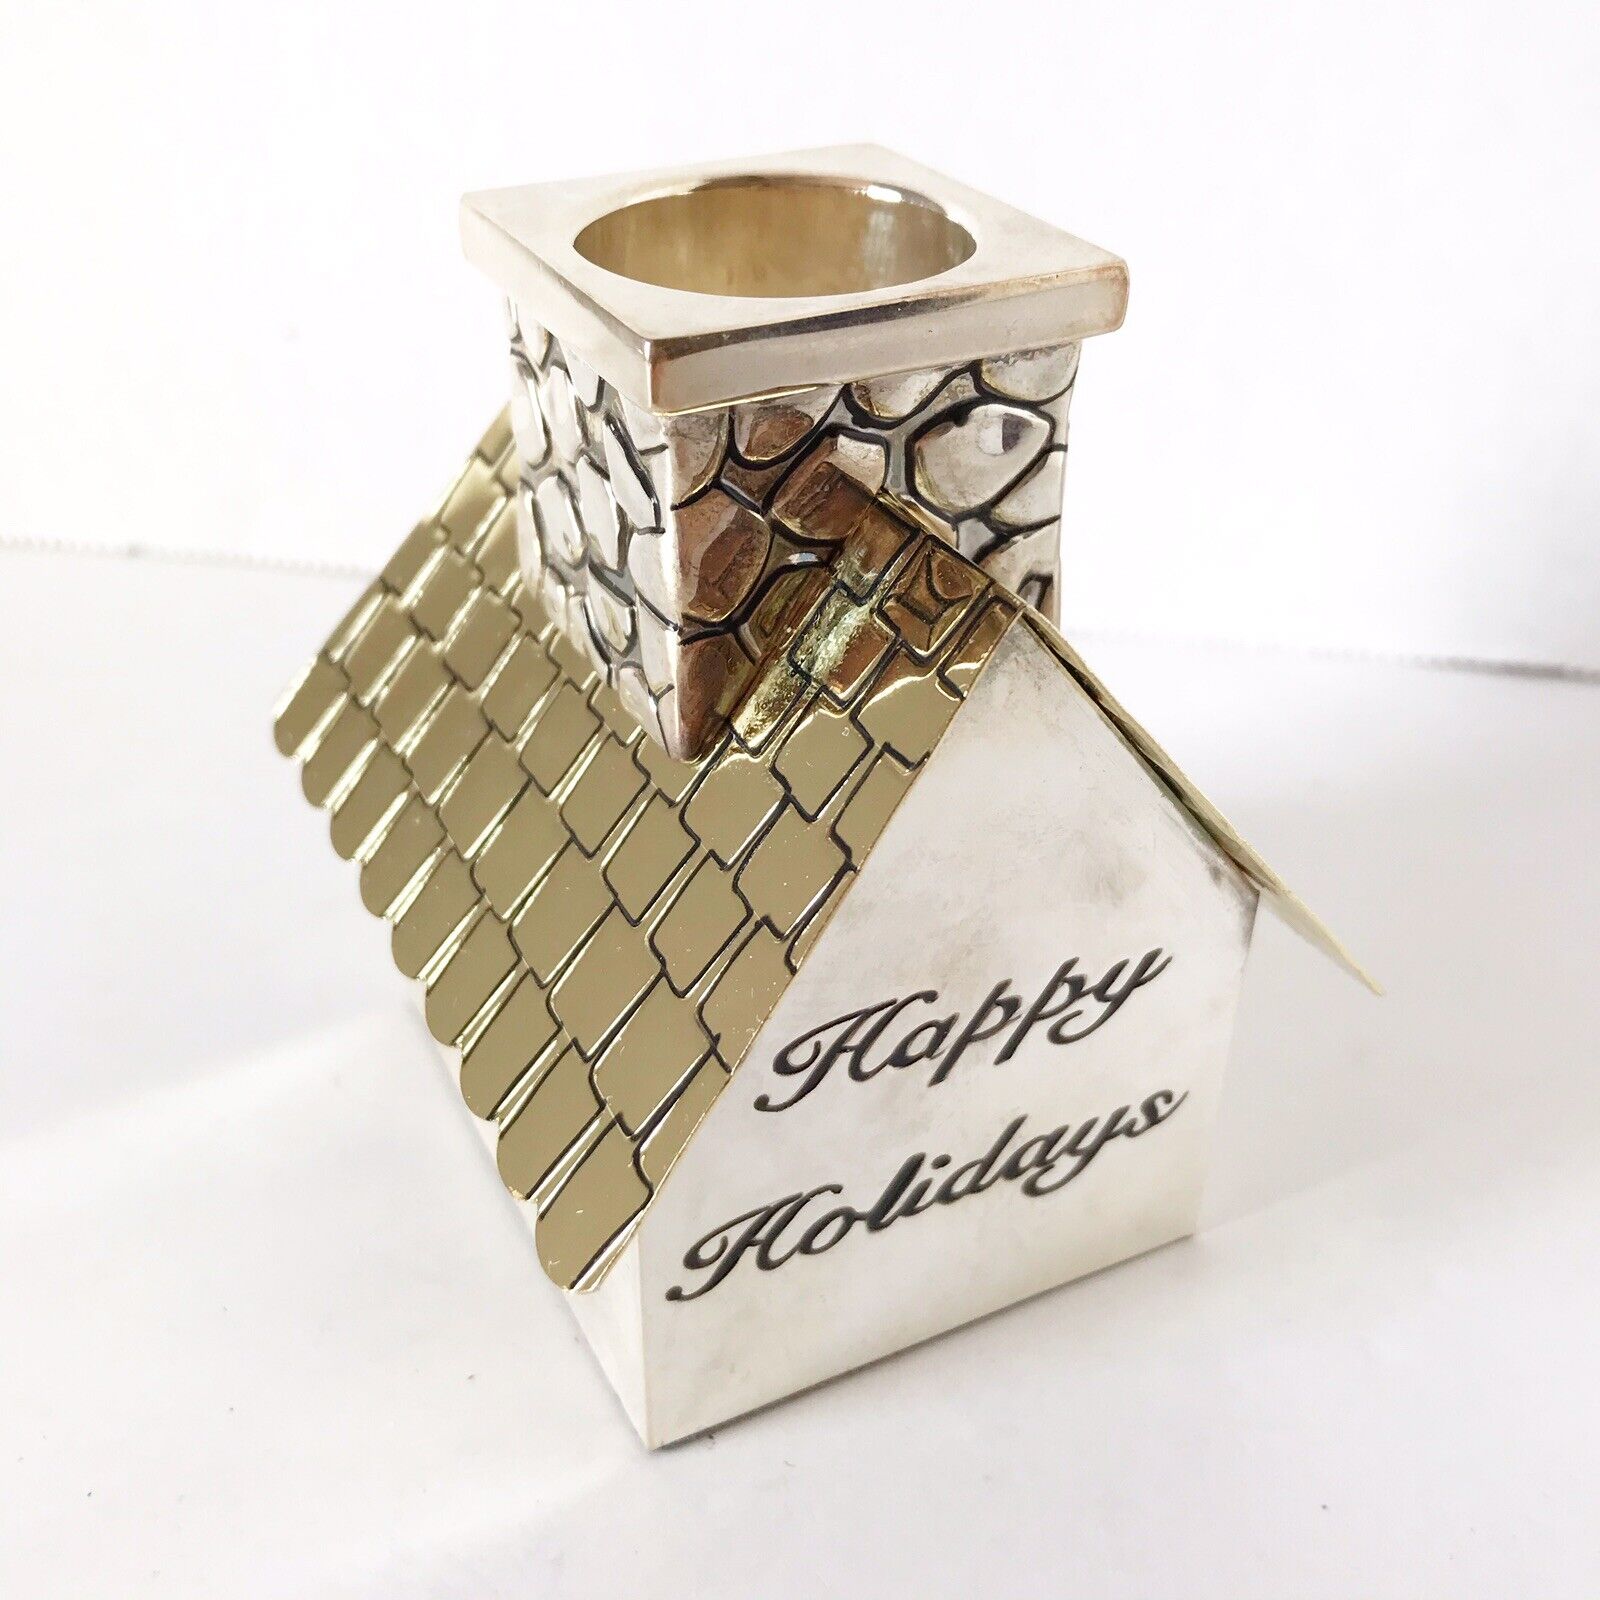 Godinger Silver Plated Candle Stick Holder Happy Holidays House Xmas Chimney